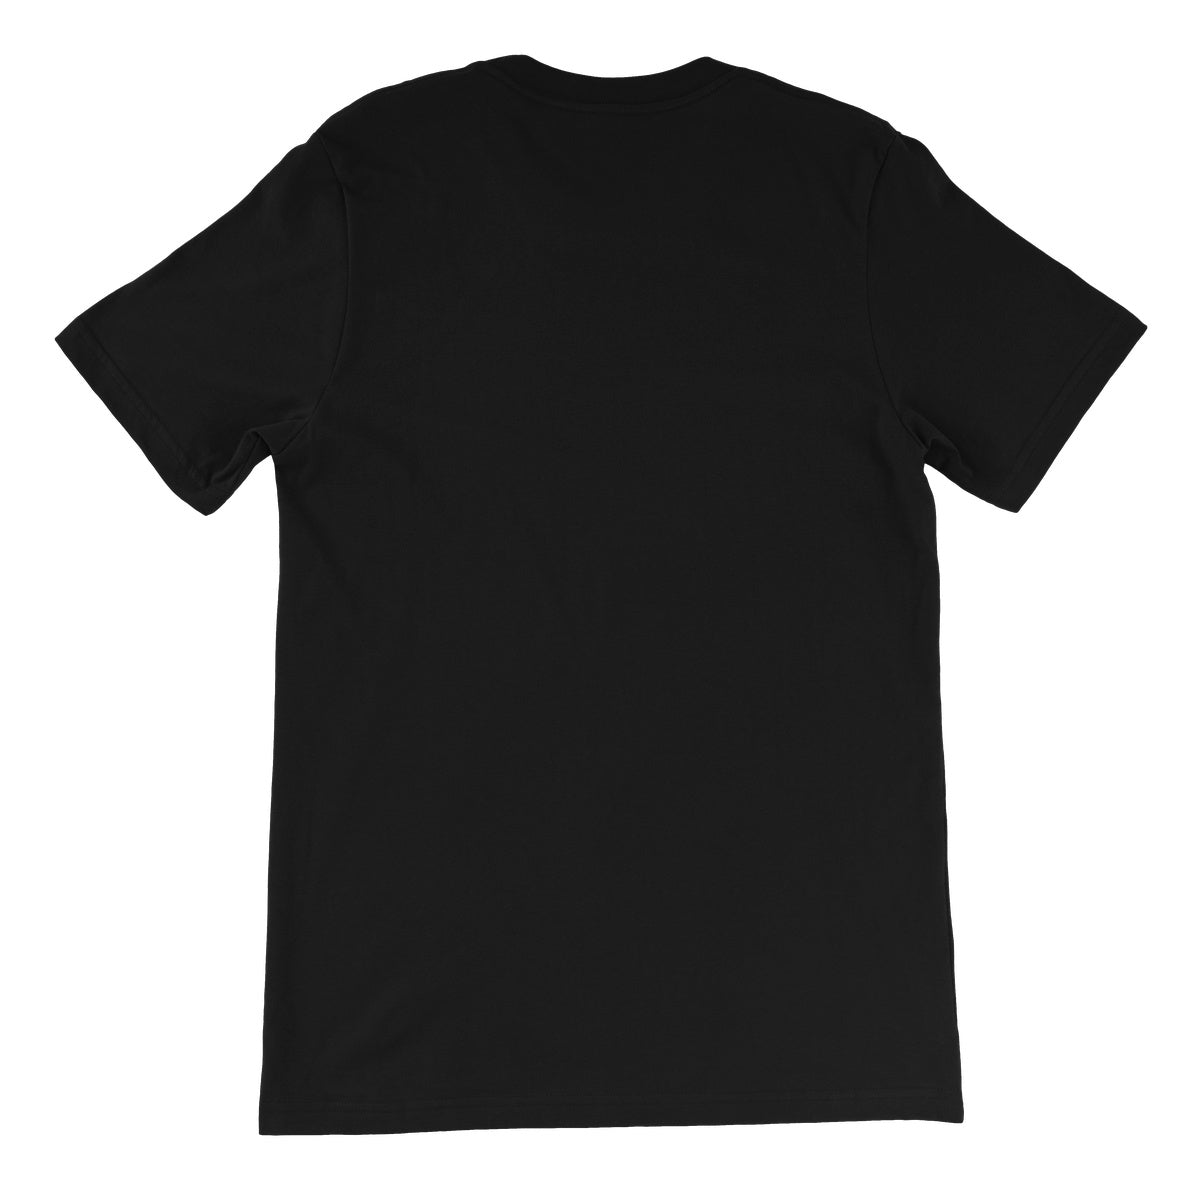 SHAMROCK Unisex Short Sleeve T-Shirt